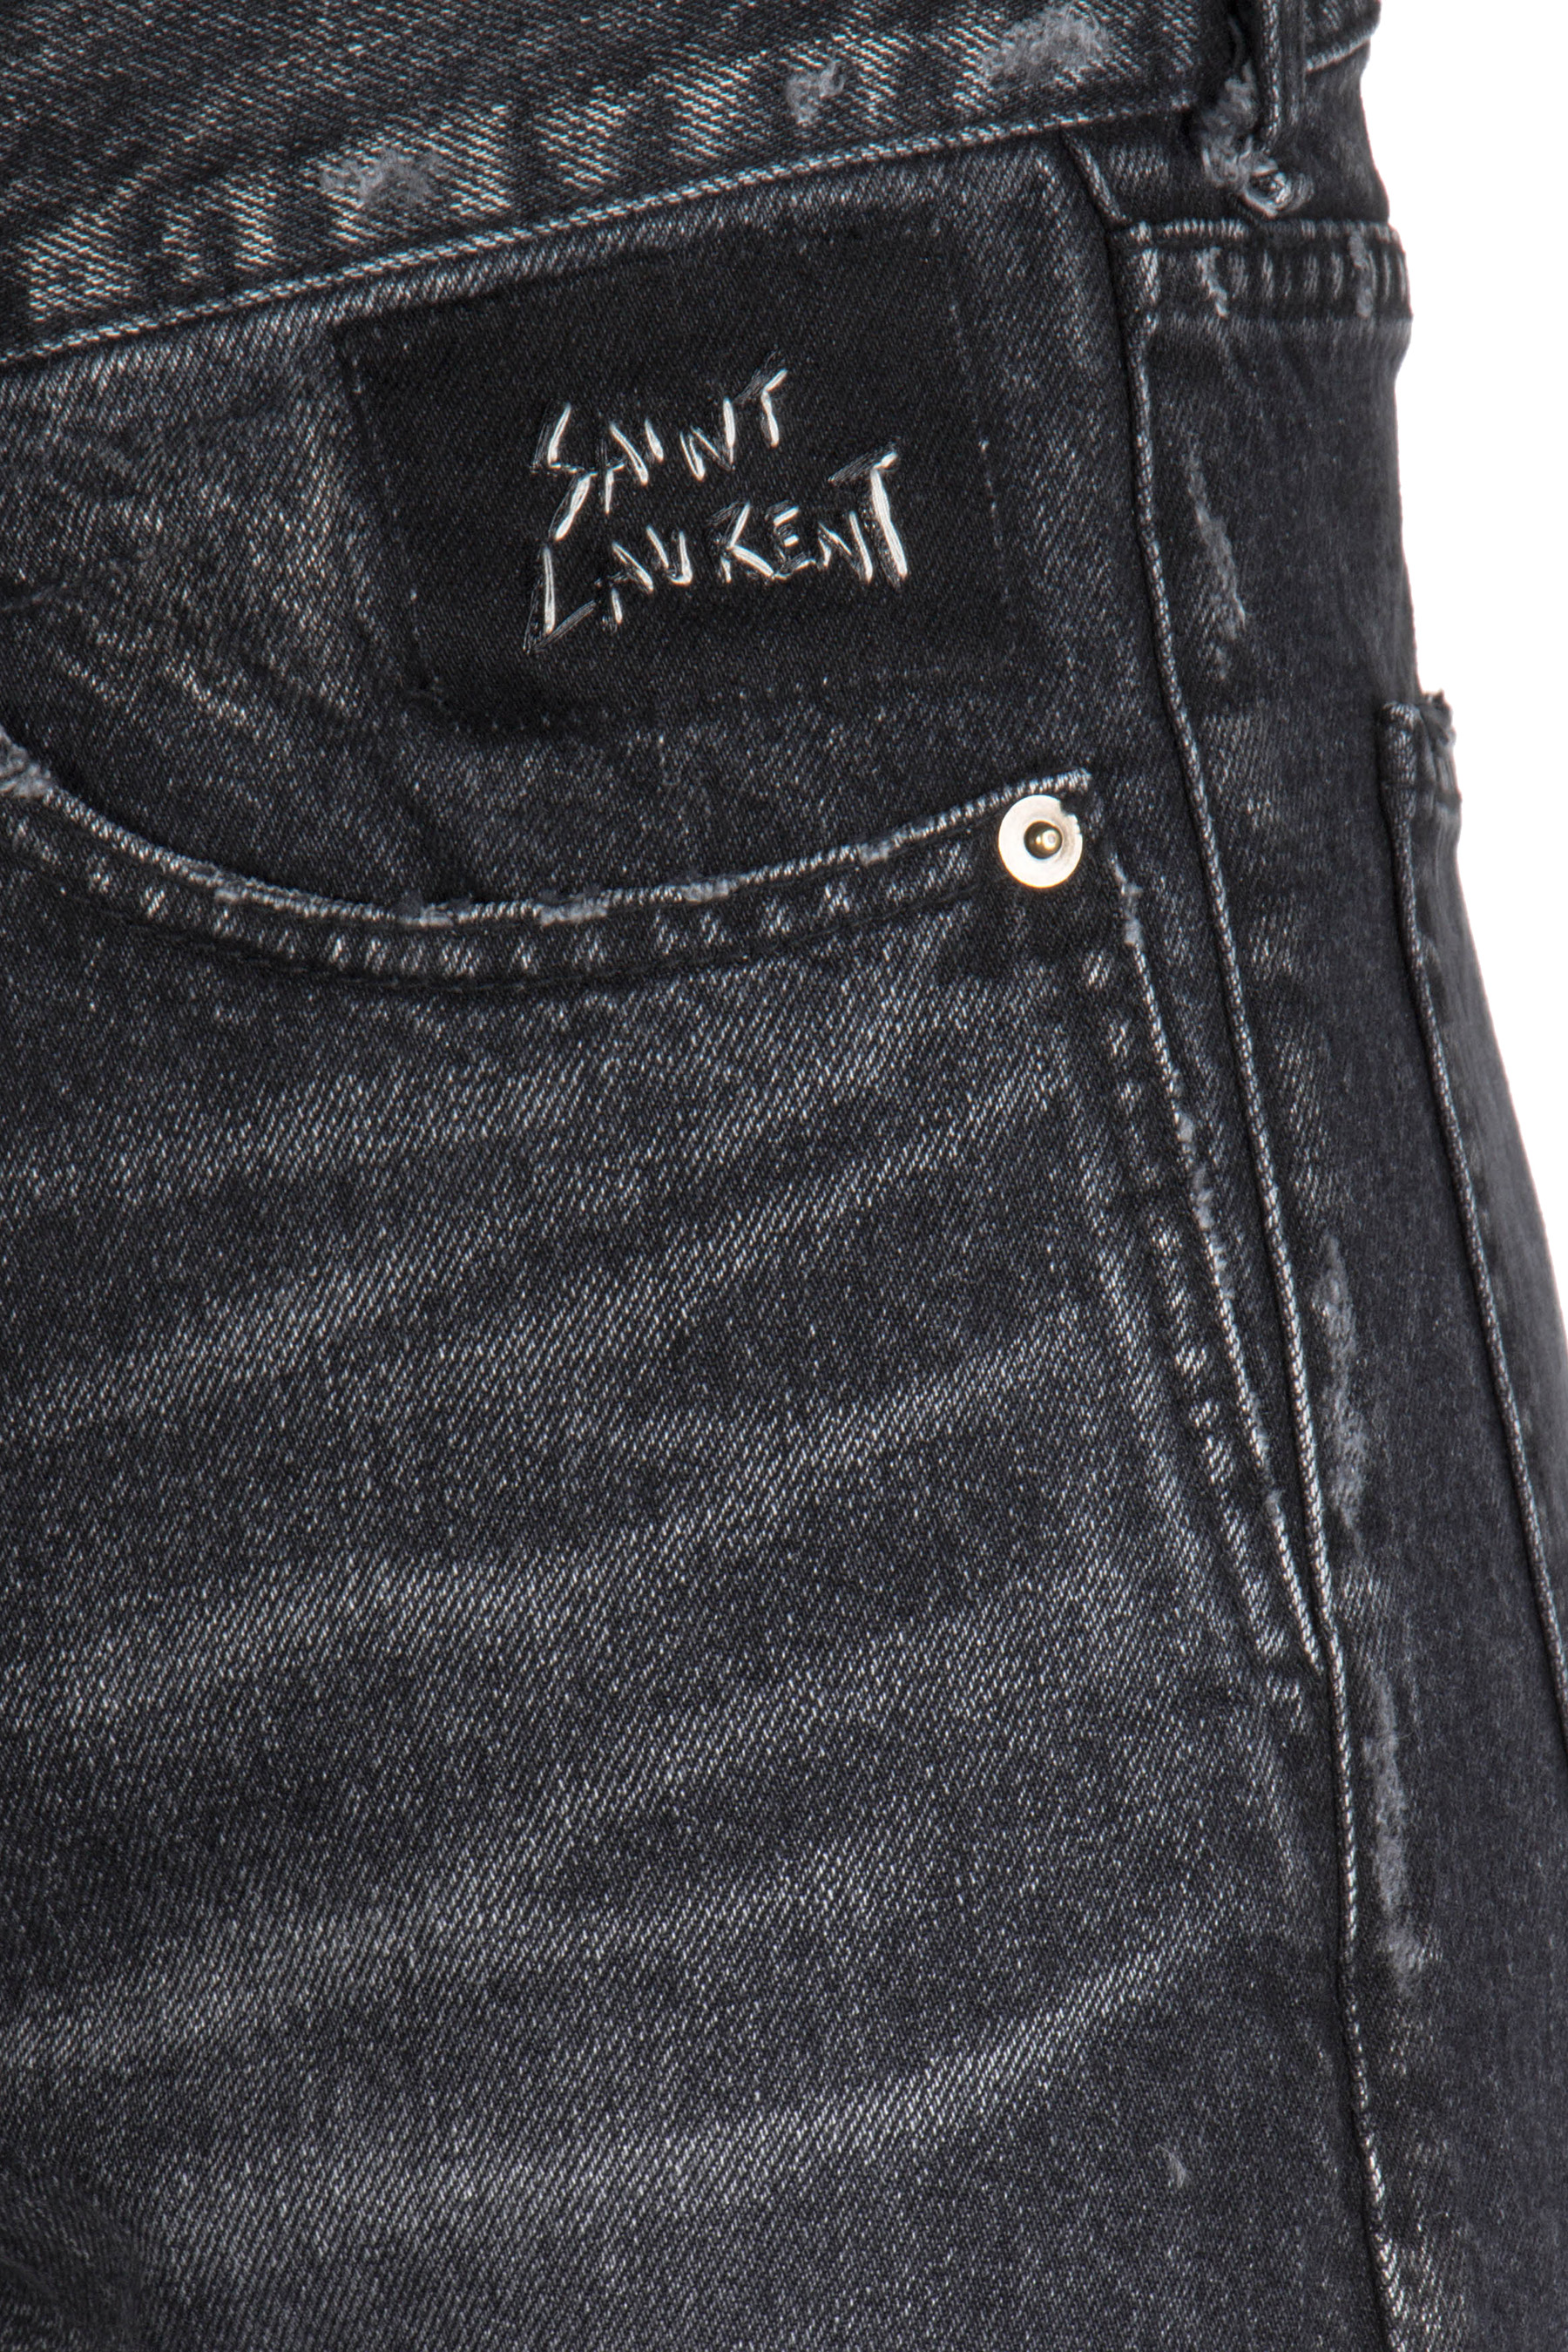 SAINT LAURENT Jeans Low Waist SL Script Embroidery | Jeans | Jeans ...